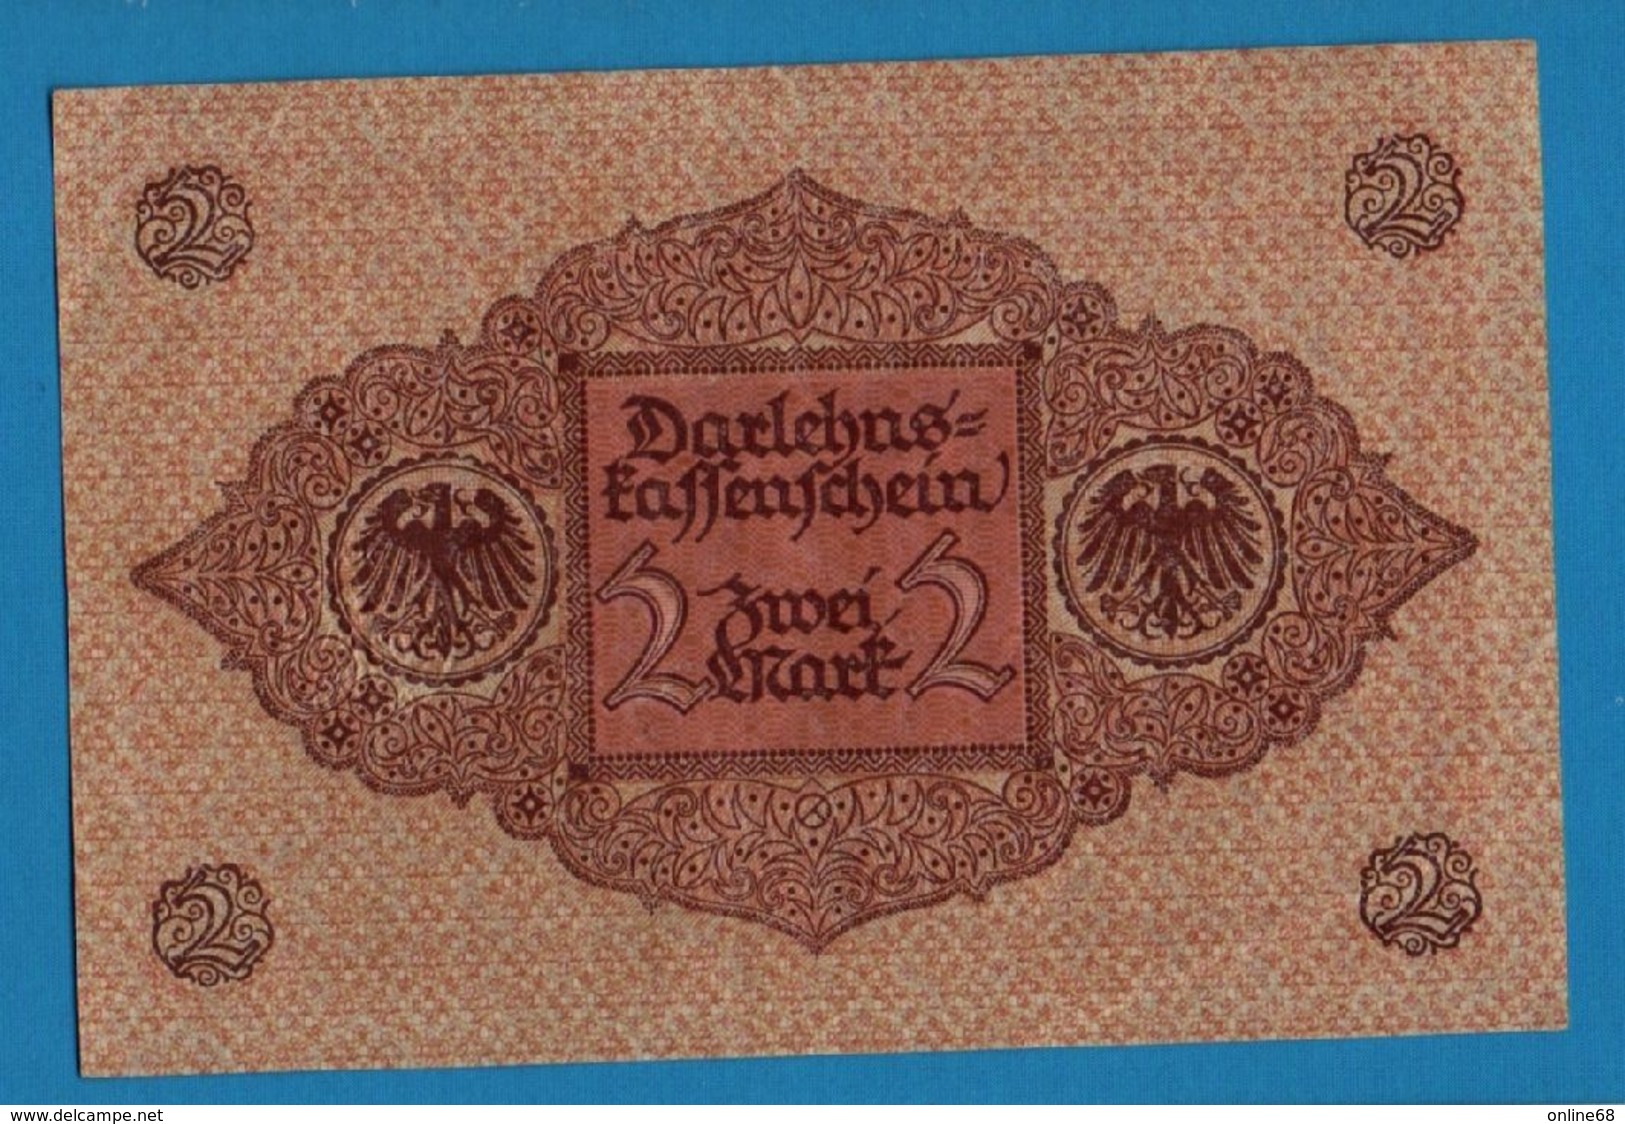 DEUTSCHES REICH 2 Mark	01.03.1920	Série # 1. 948465   P# 59	DARLEHENSKASSENSCHEIN - Reichsschuldenverwaltung